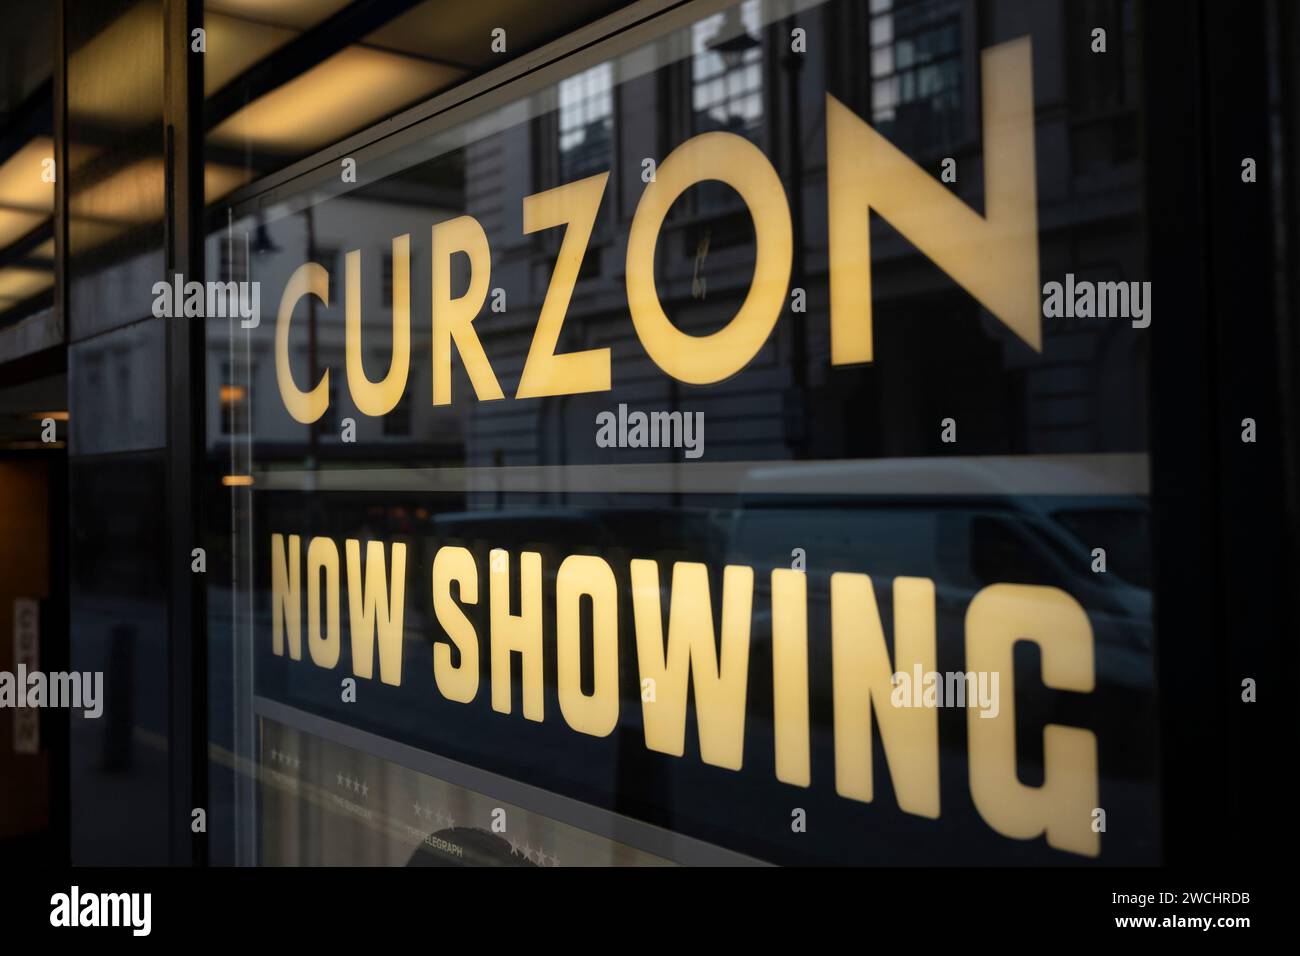 Le Curzon Mayfair Cinema, bâtiment classé Grade II situé au 37–38 Curzon Street au cœur de Mayfair à Londres, en Angleterre, au Royaume-Uni Banque D'Images